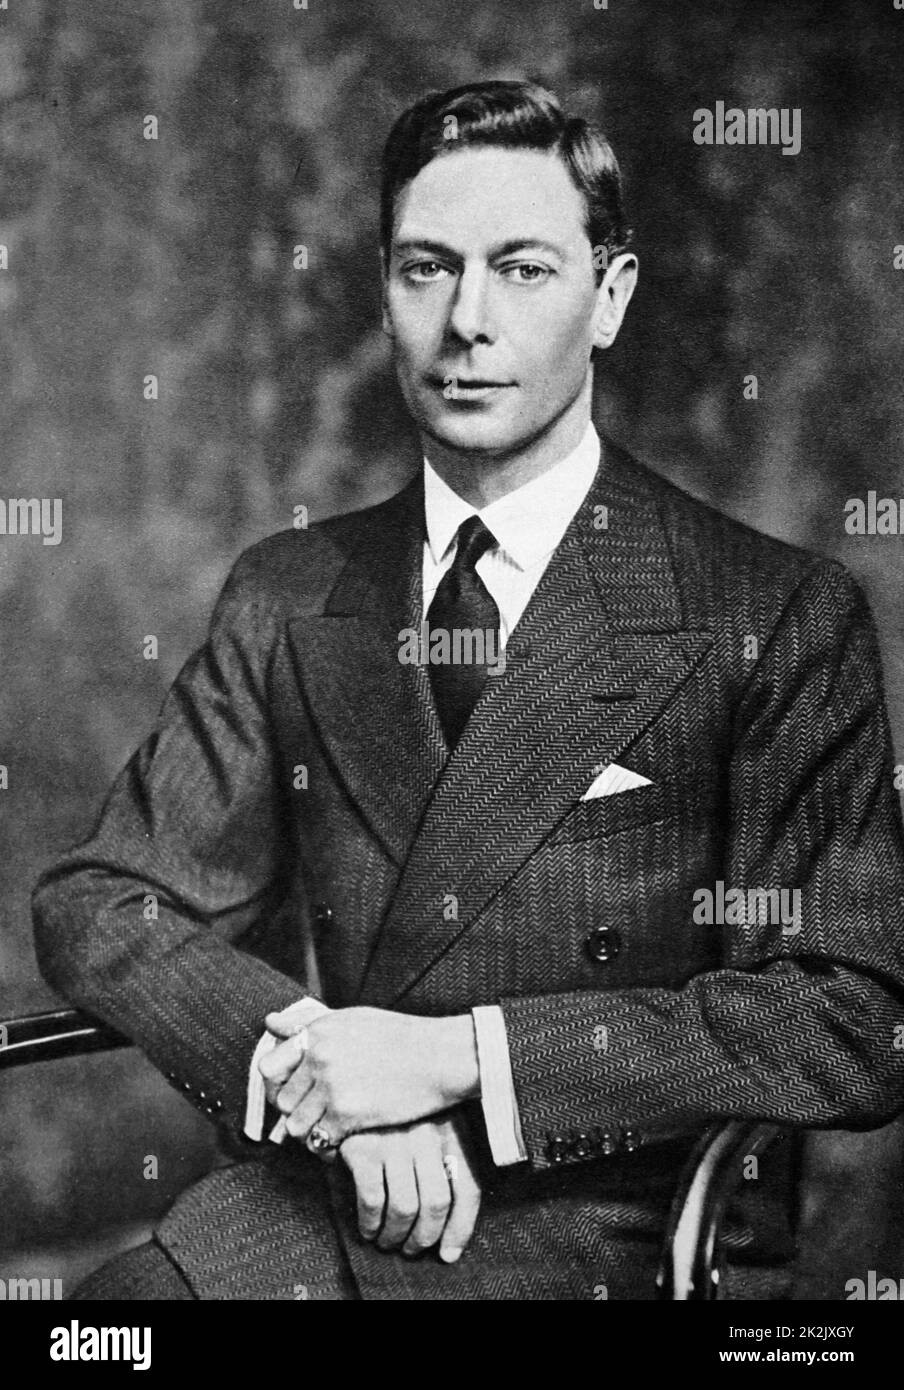 Photographie du roi George VI (1895-1952) Ancien Roi du Royaume-Uni et des Dominions du Commonwealth britannique. En date du 20e siècle Banque D'Images